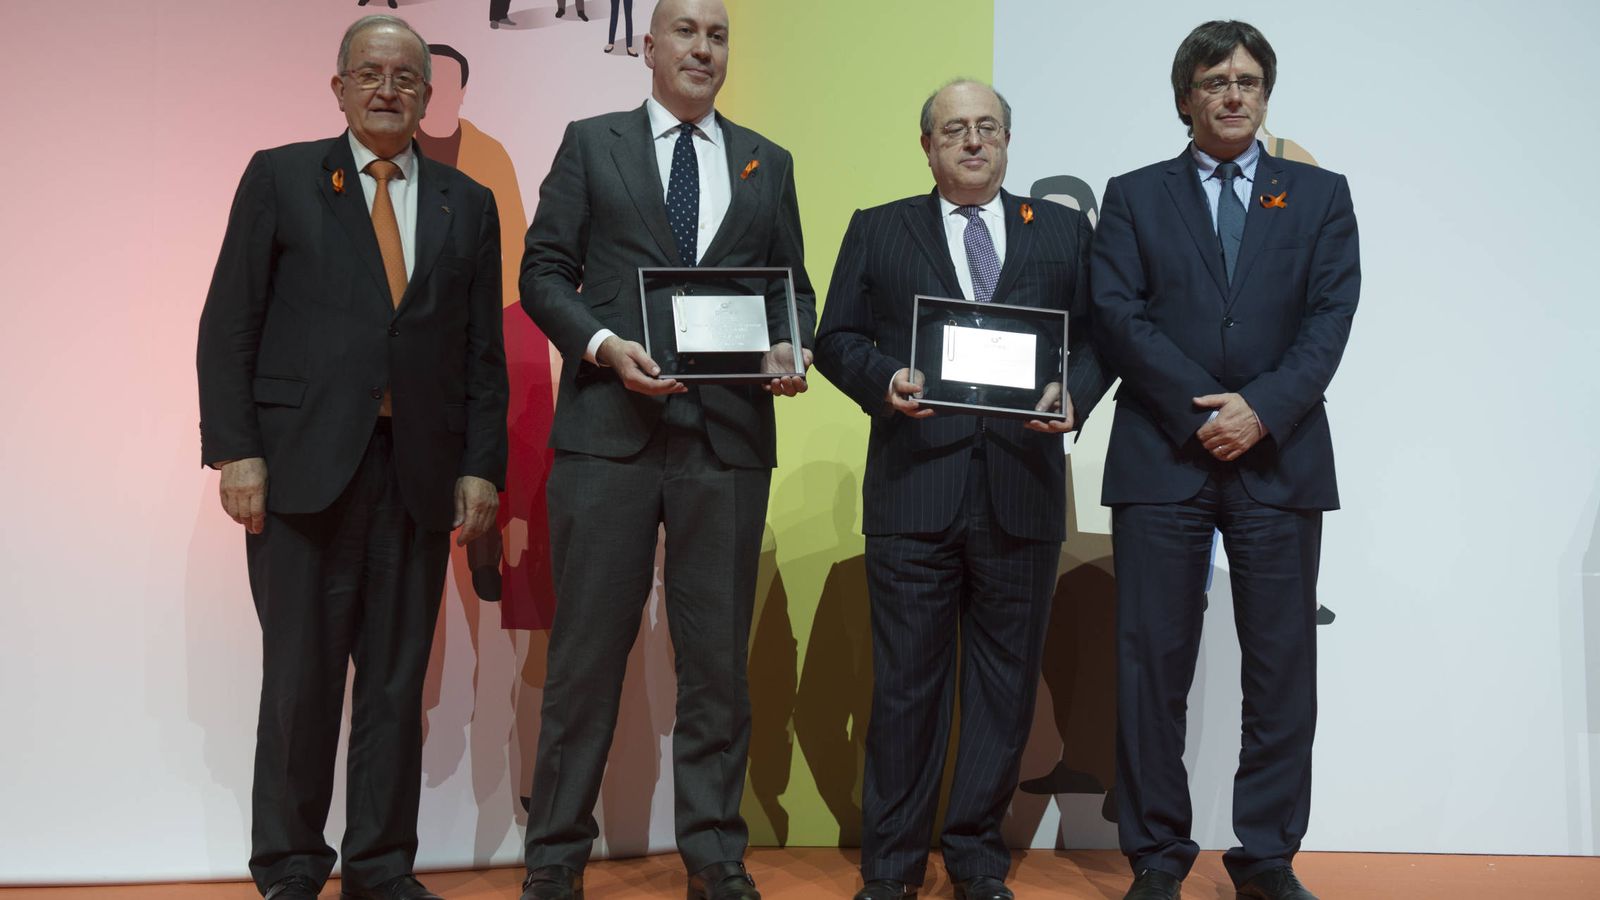 Foto: Nacho Cardero, director de El Confidencial (2i), recoge el premio entregado por la patronal Pimec. (Pimec)